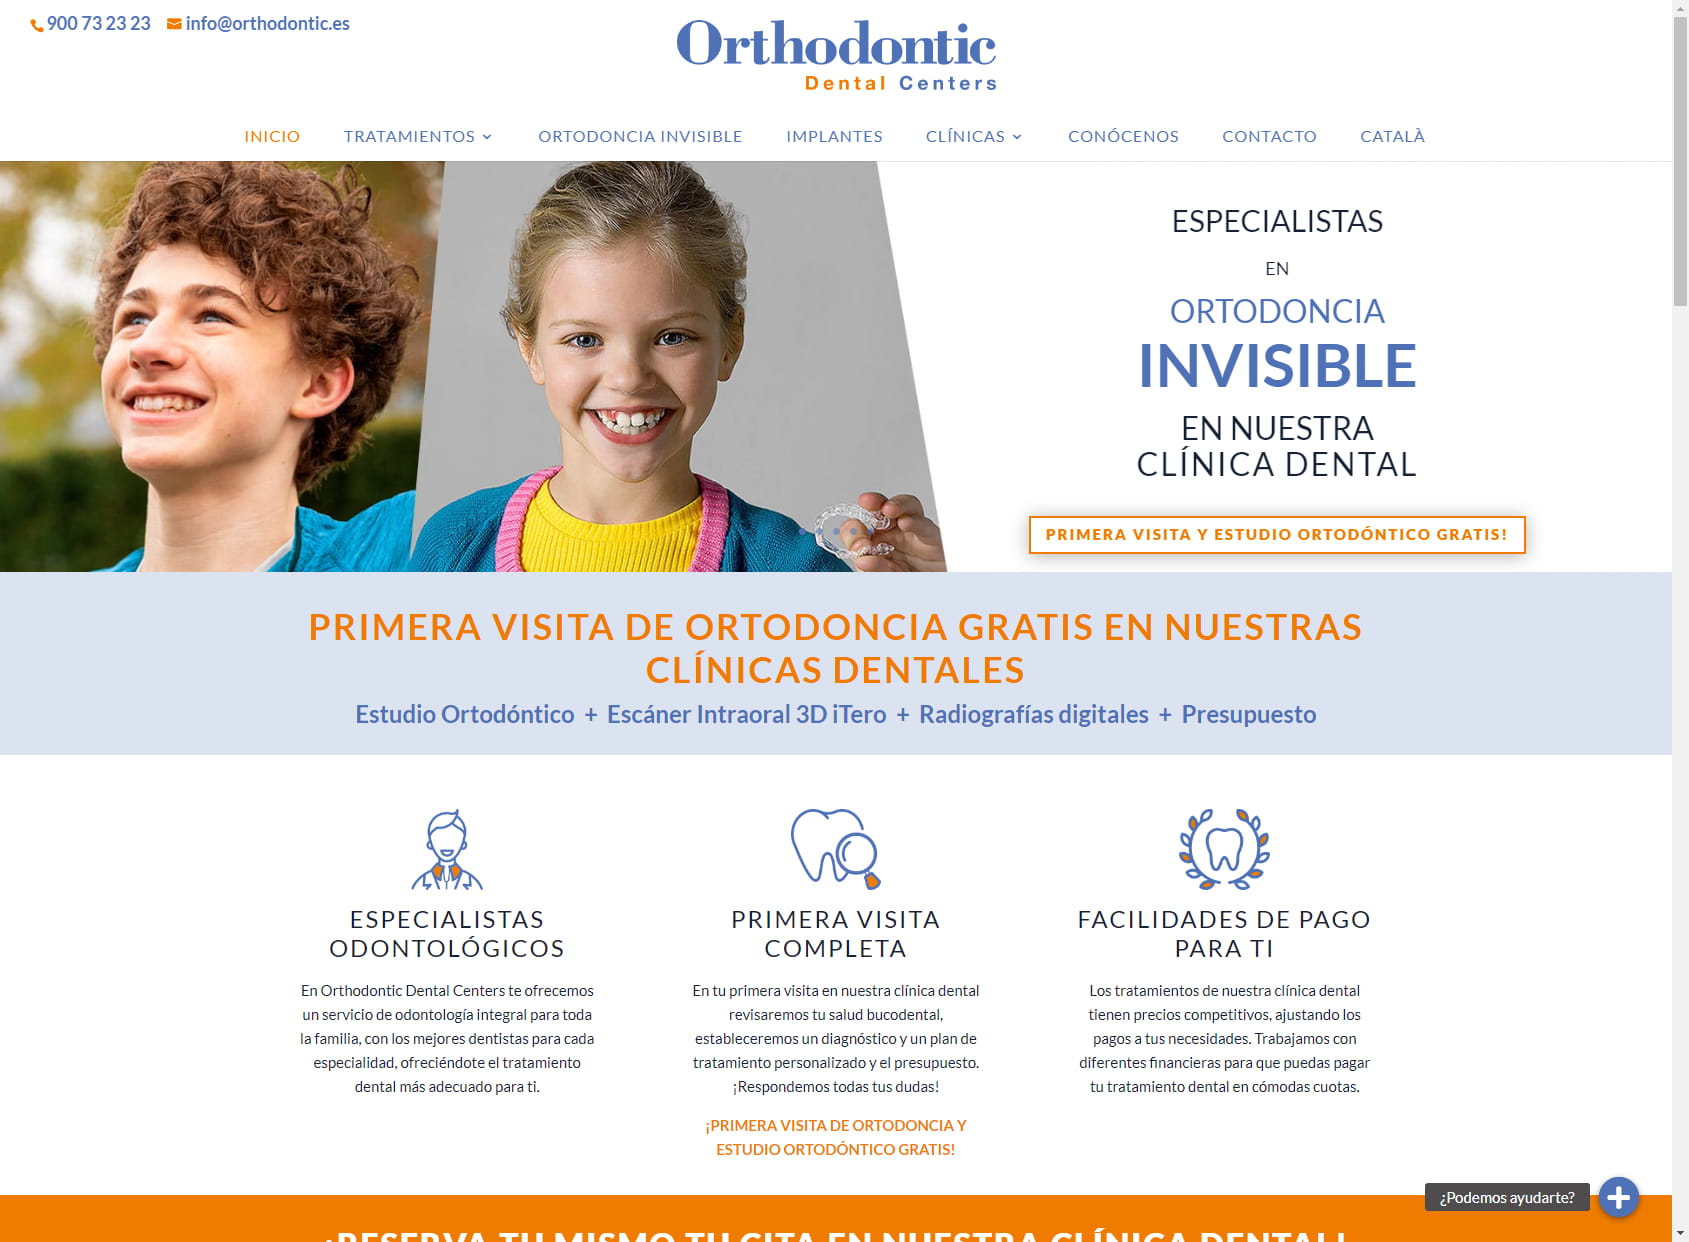 Clínica Dental Orthodontic Centers, Vilanova